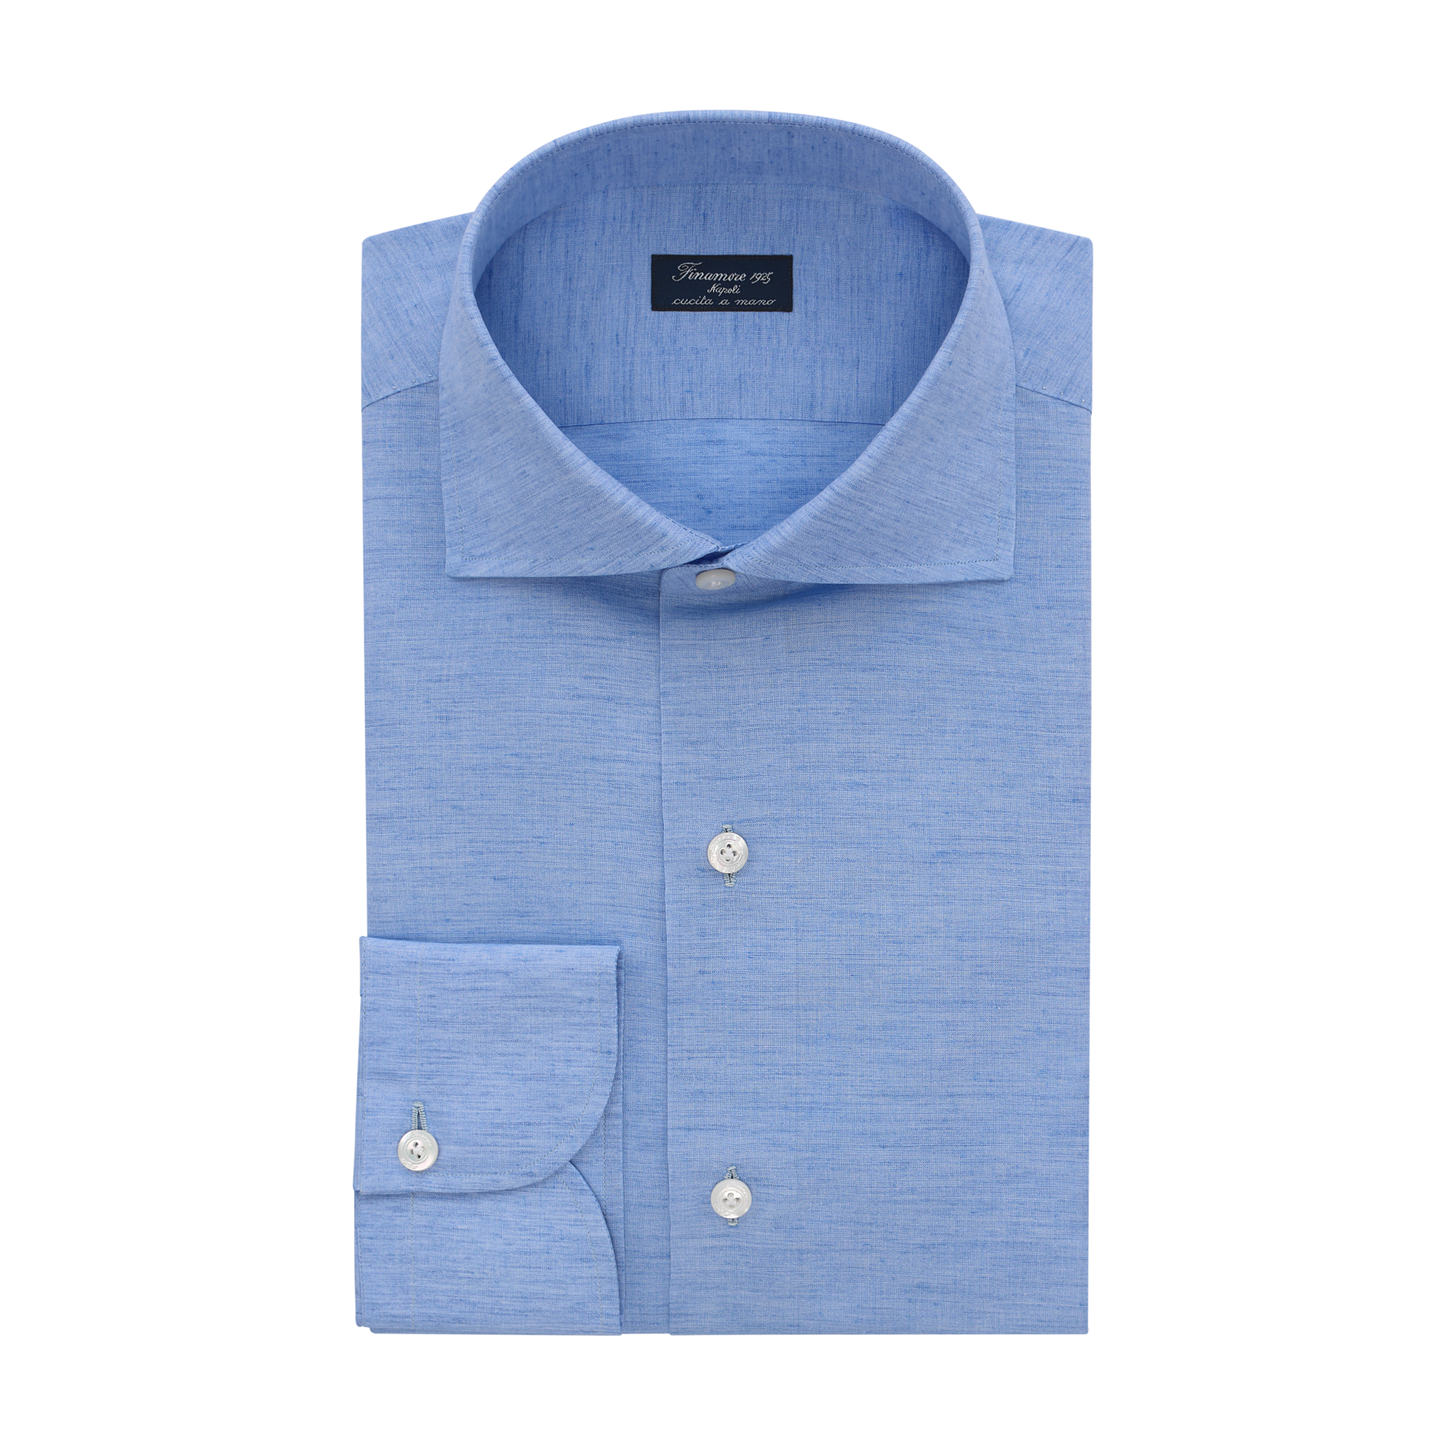 Classic Napoli Shirt in Light Blue Melange